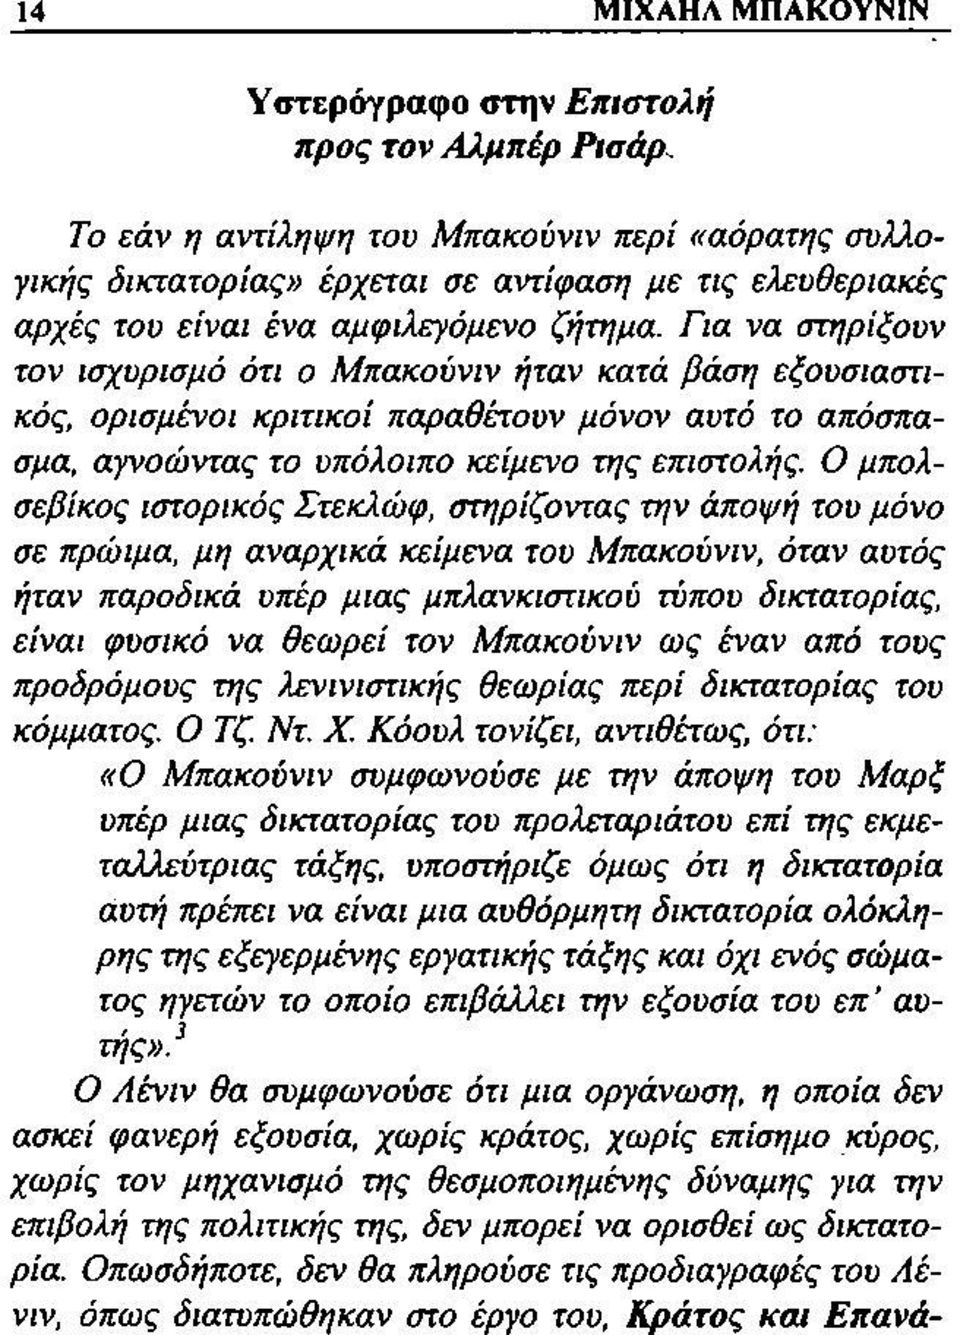 Ο μπολσεβίκος ιστορικός Στεκλώφ, στηρίζοντας την άποψή του μόνο σε πρώιμα, μη αναρχικά κείμενα του Μπακούνιν, όταν αυτός ήταν παροδικά υπέρ μιας μπλανκιστικού τύπου δικτατορίας, είναι φυσικό να